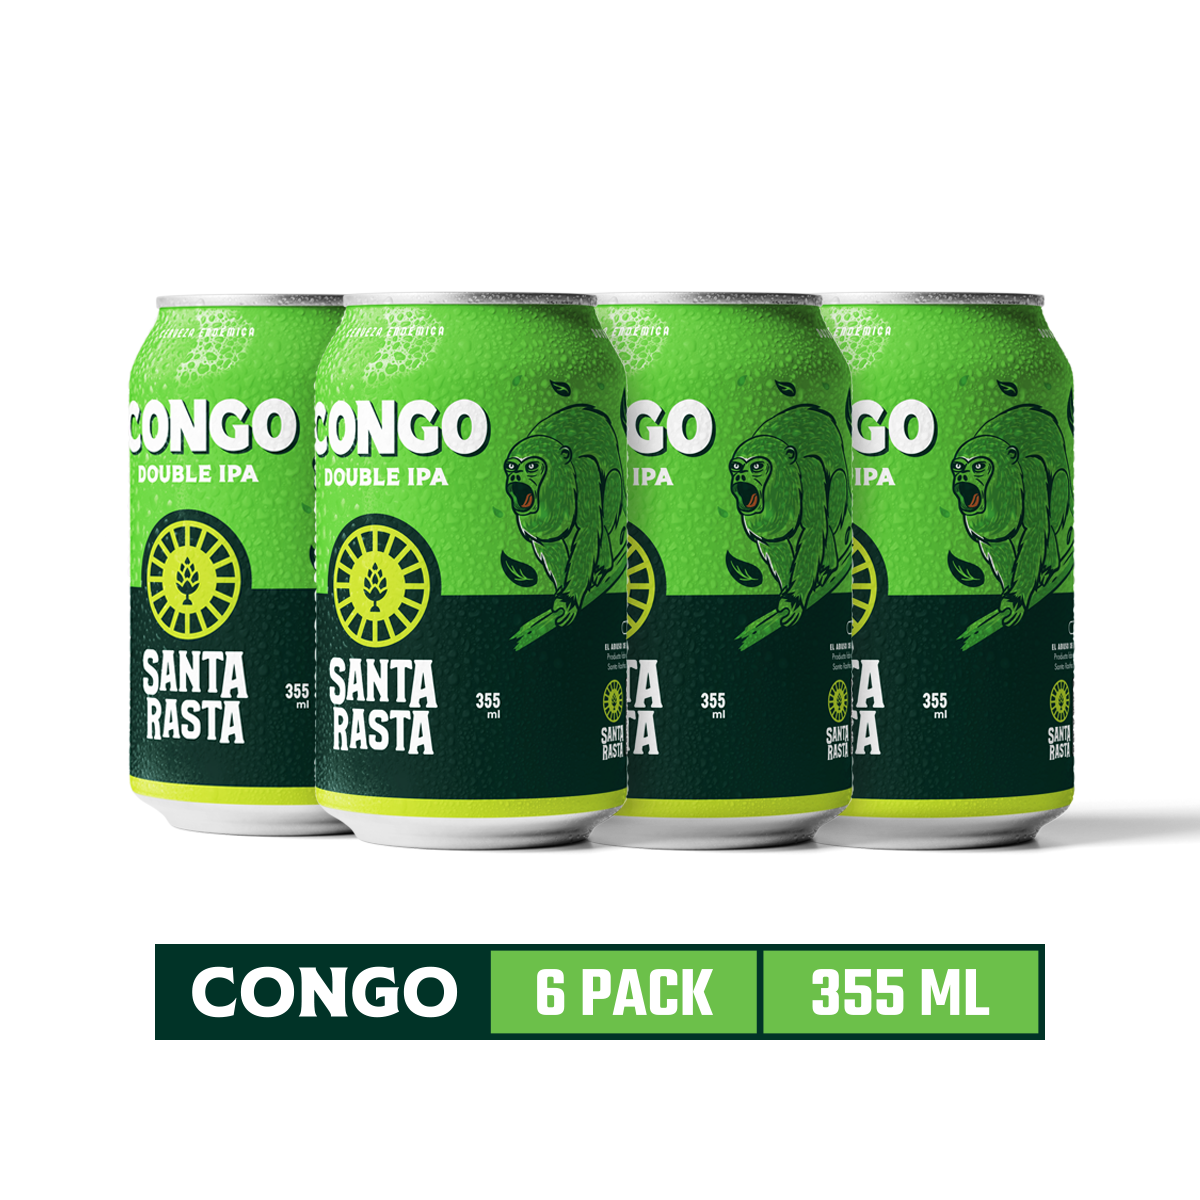 Congo 6 Pack I ID3